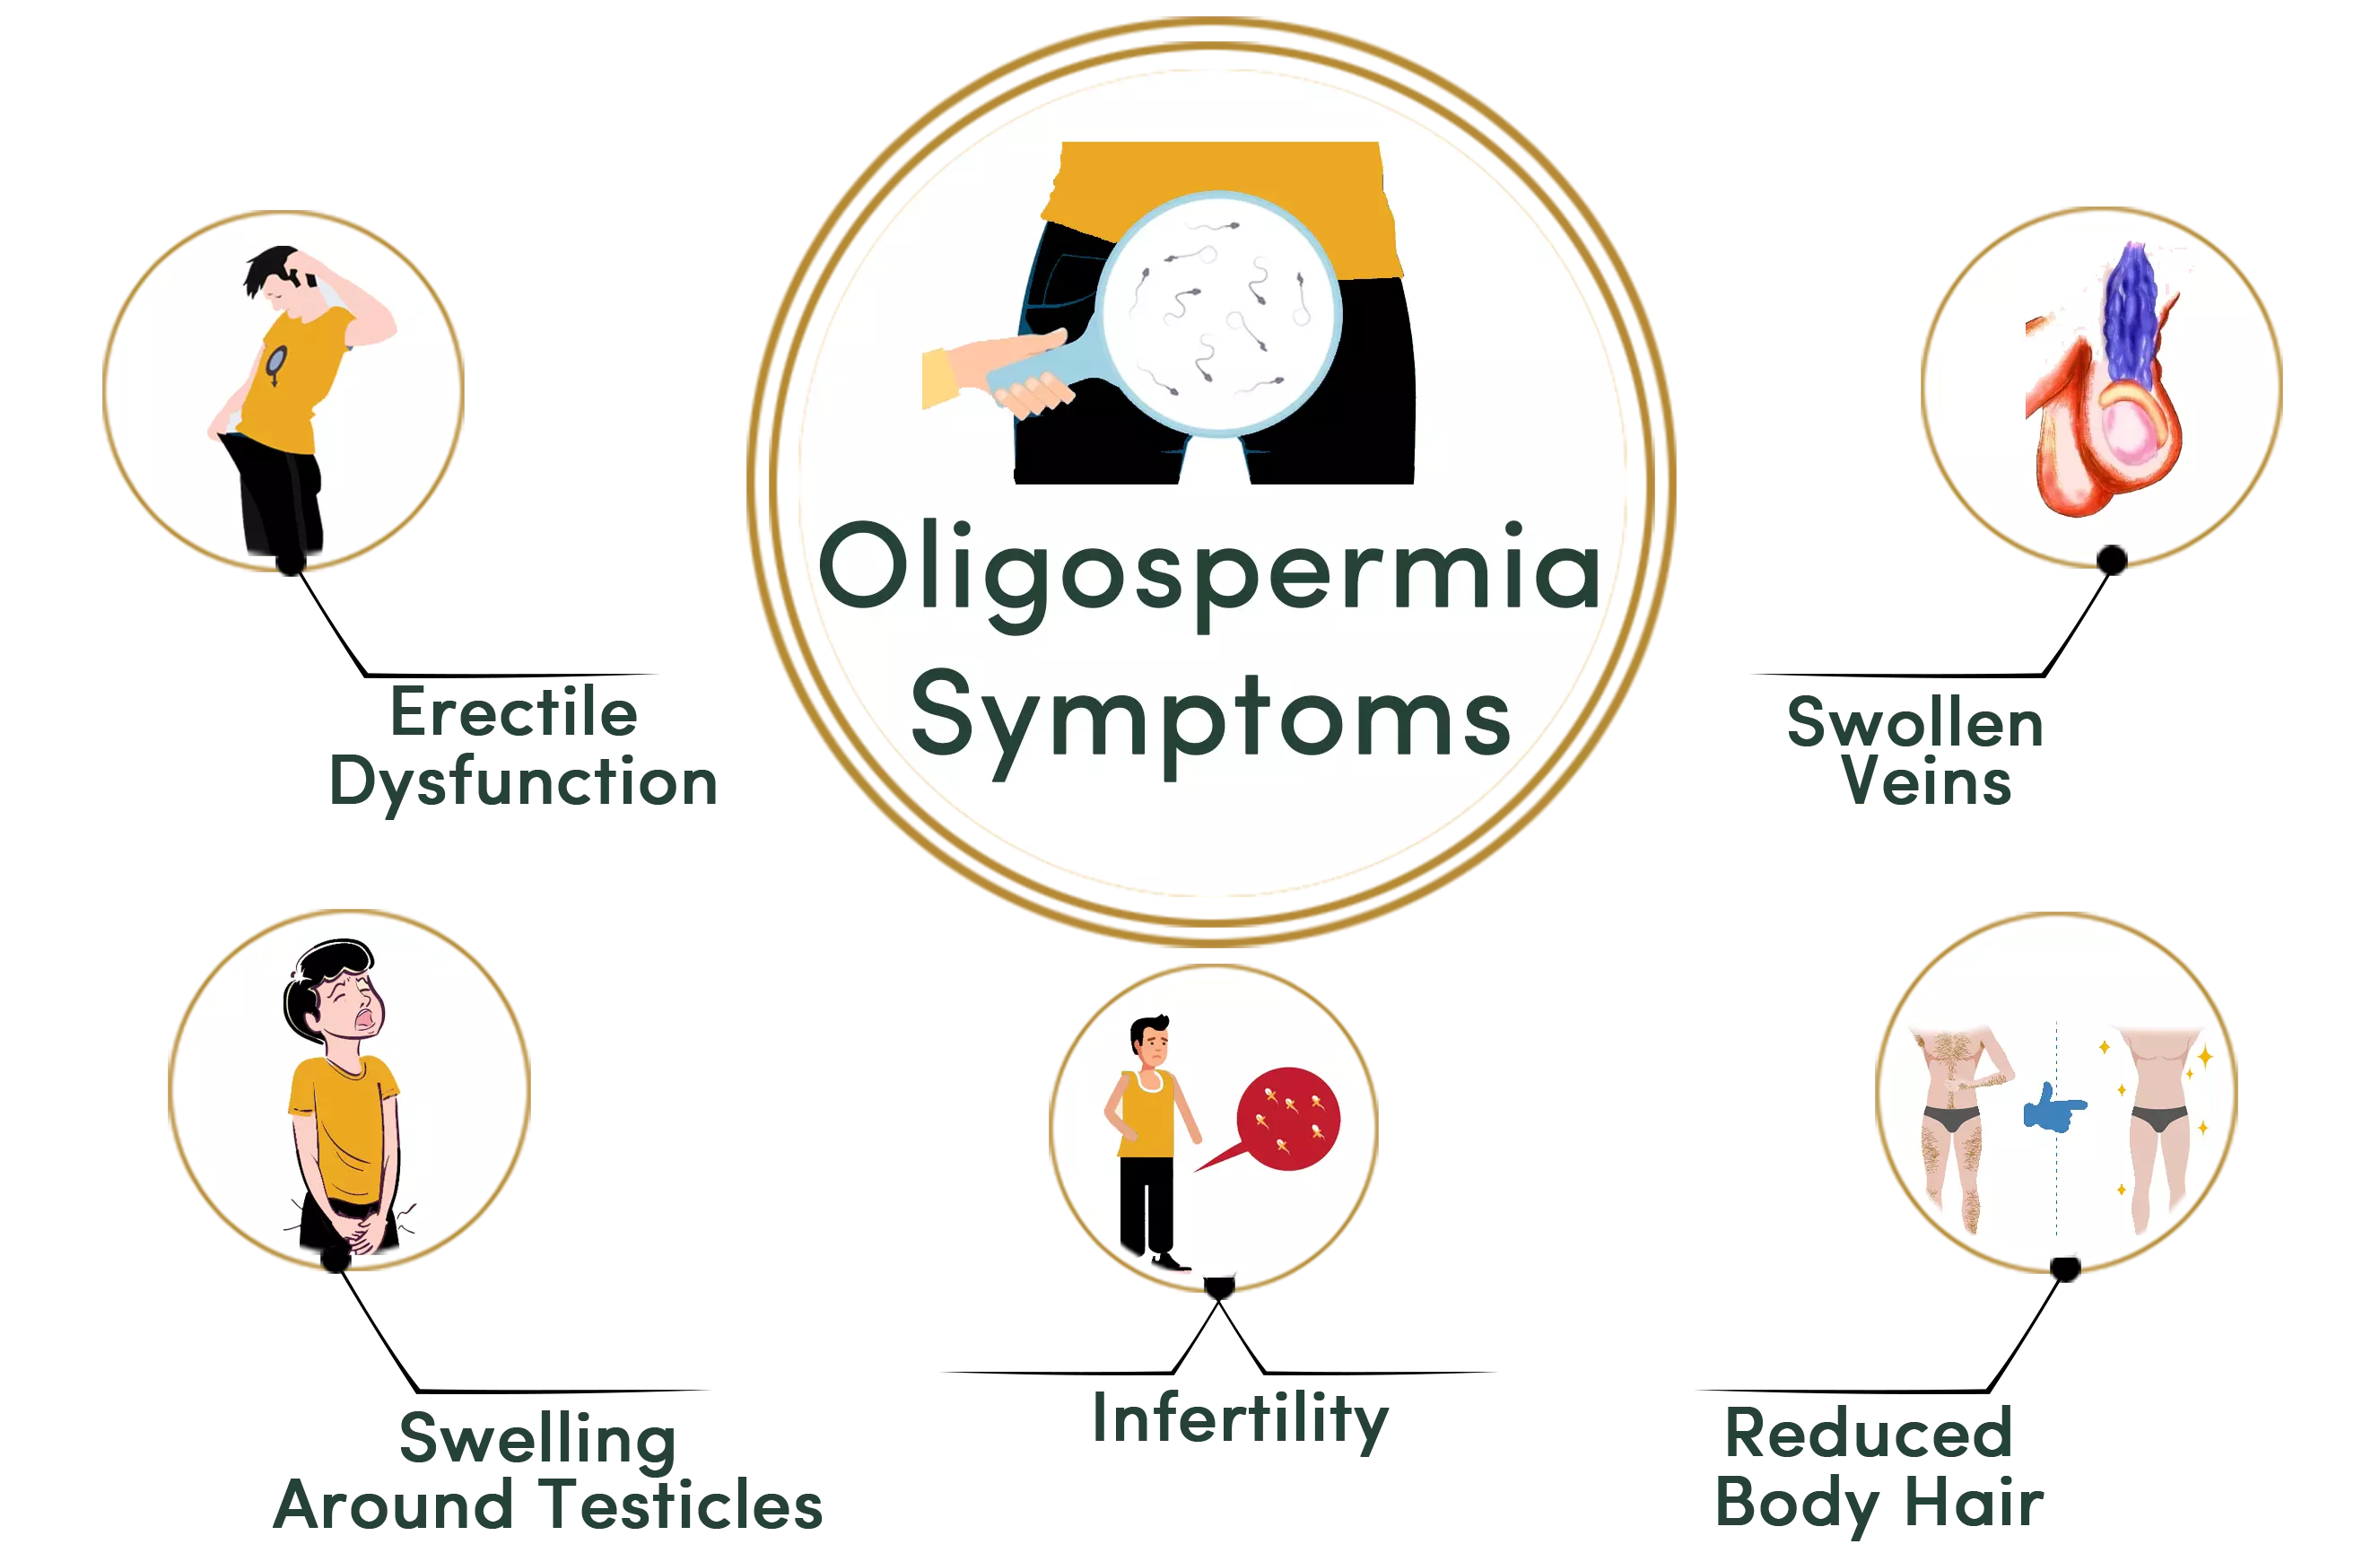 Oligospermia symptoms